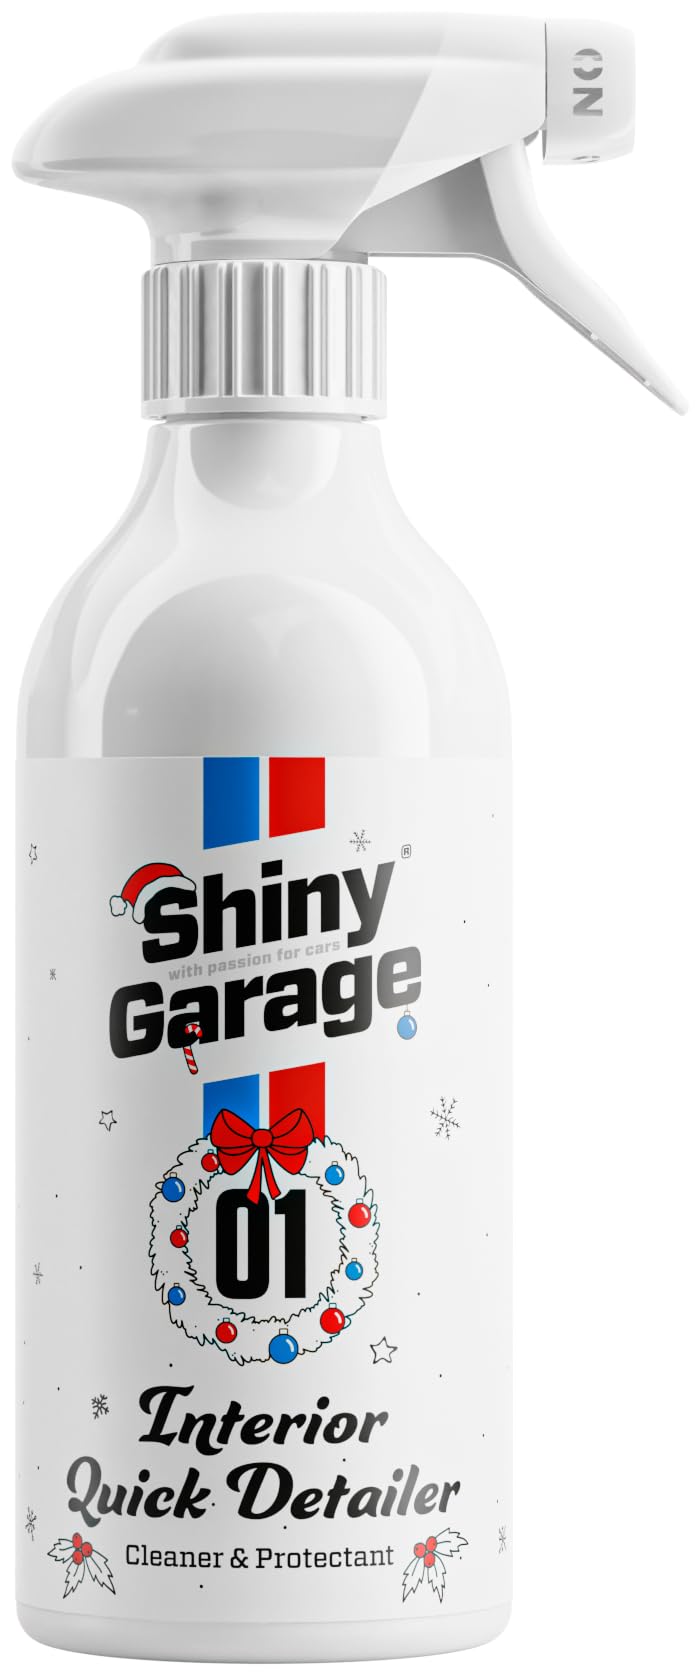 Shiny Garage Innenraumreiniger Auto Christmas Interior Quick Detailer 500 ml - Polsterreiniger - Lederreiniger - Kunststoffreiniger Auto in Sprühflasche - Innenraum für die Autopflege von Shiny Garage